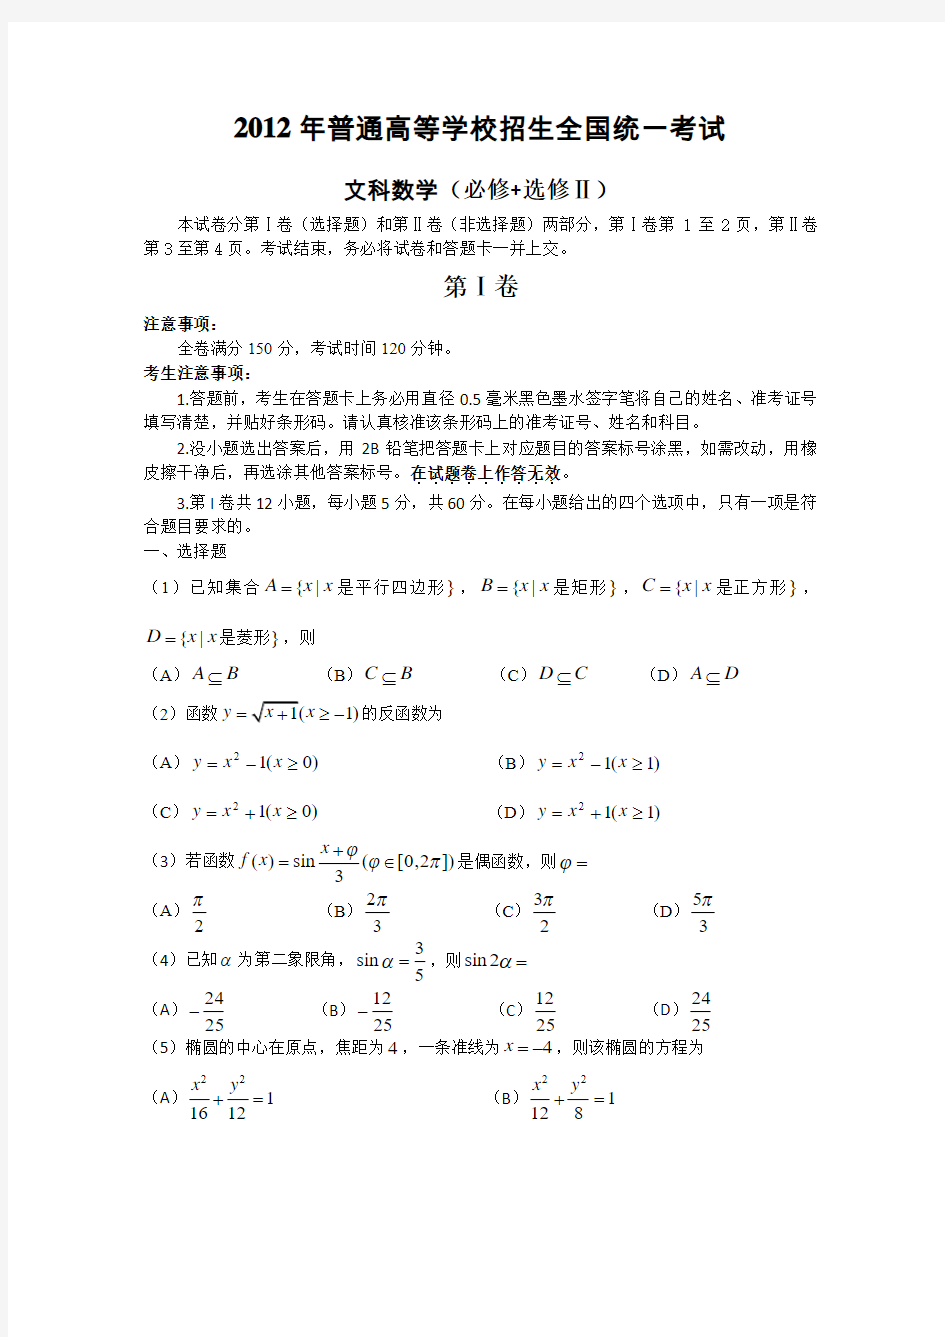 2012年高考真题——文科数学(全国卷)Word版